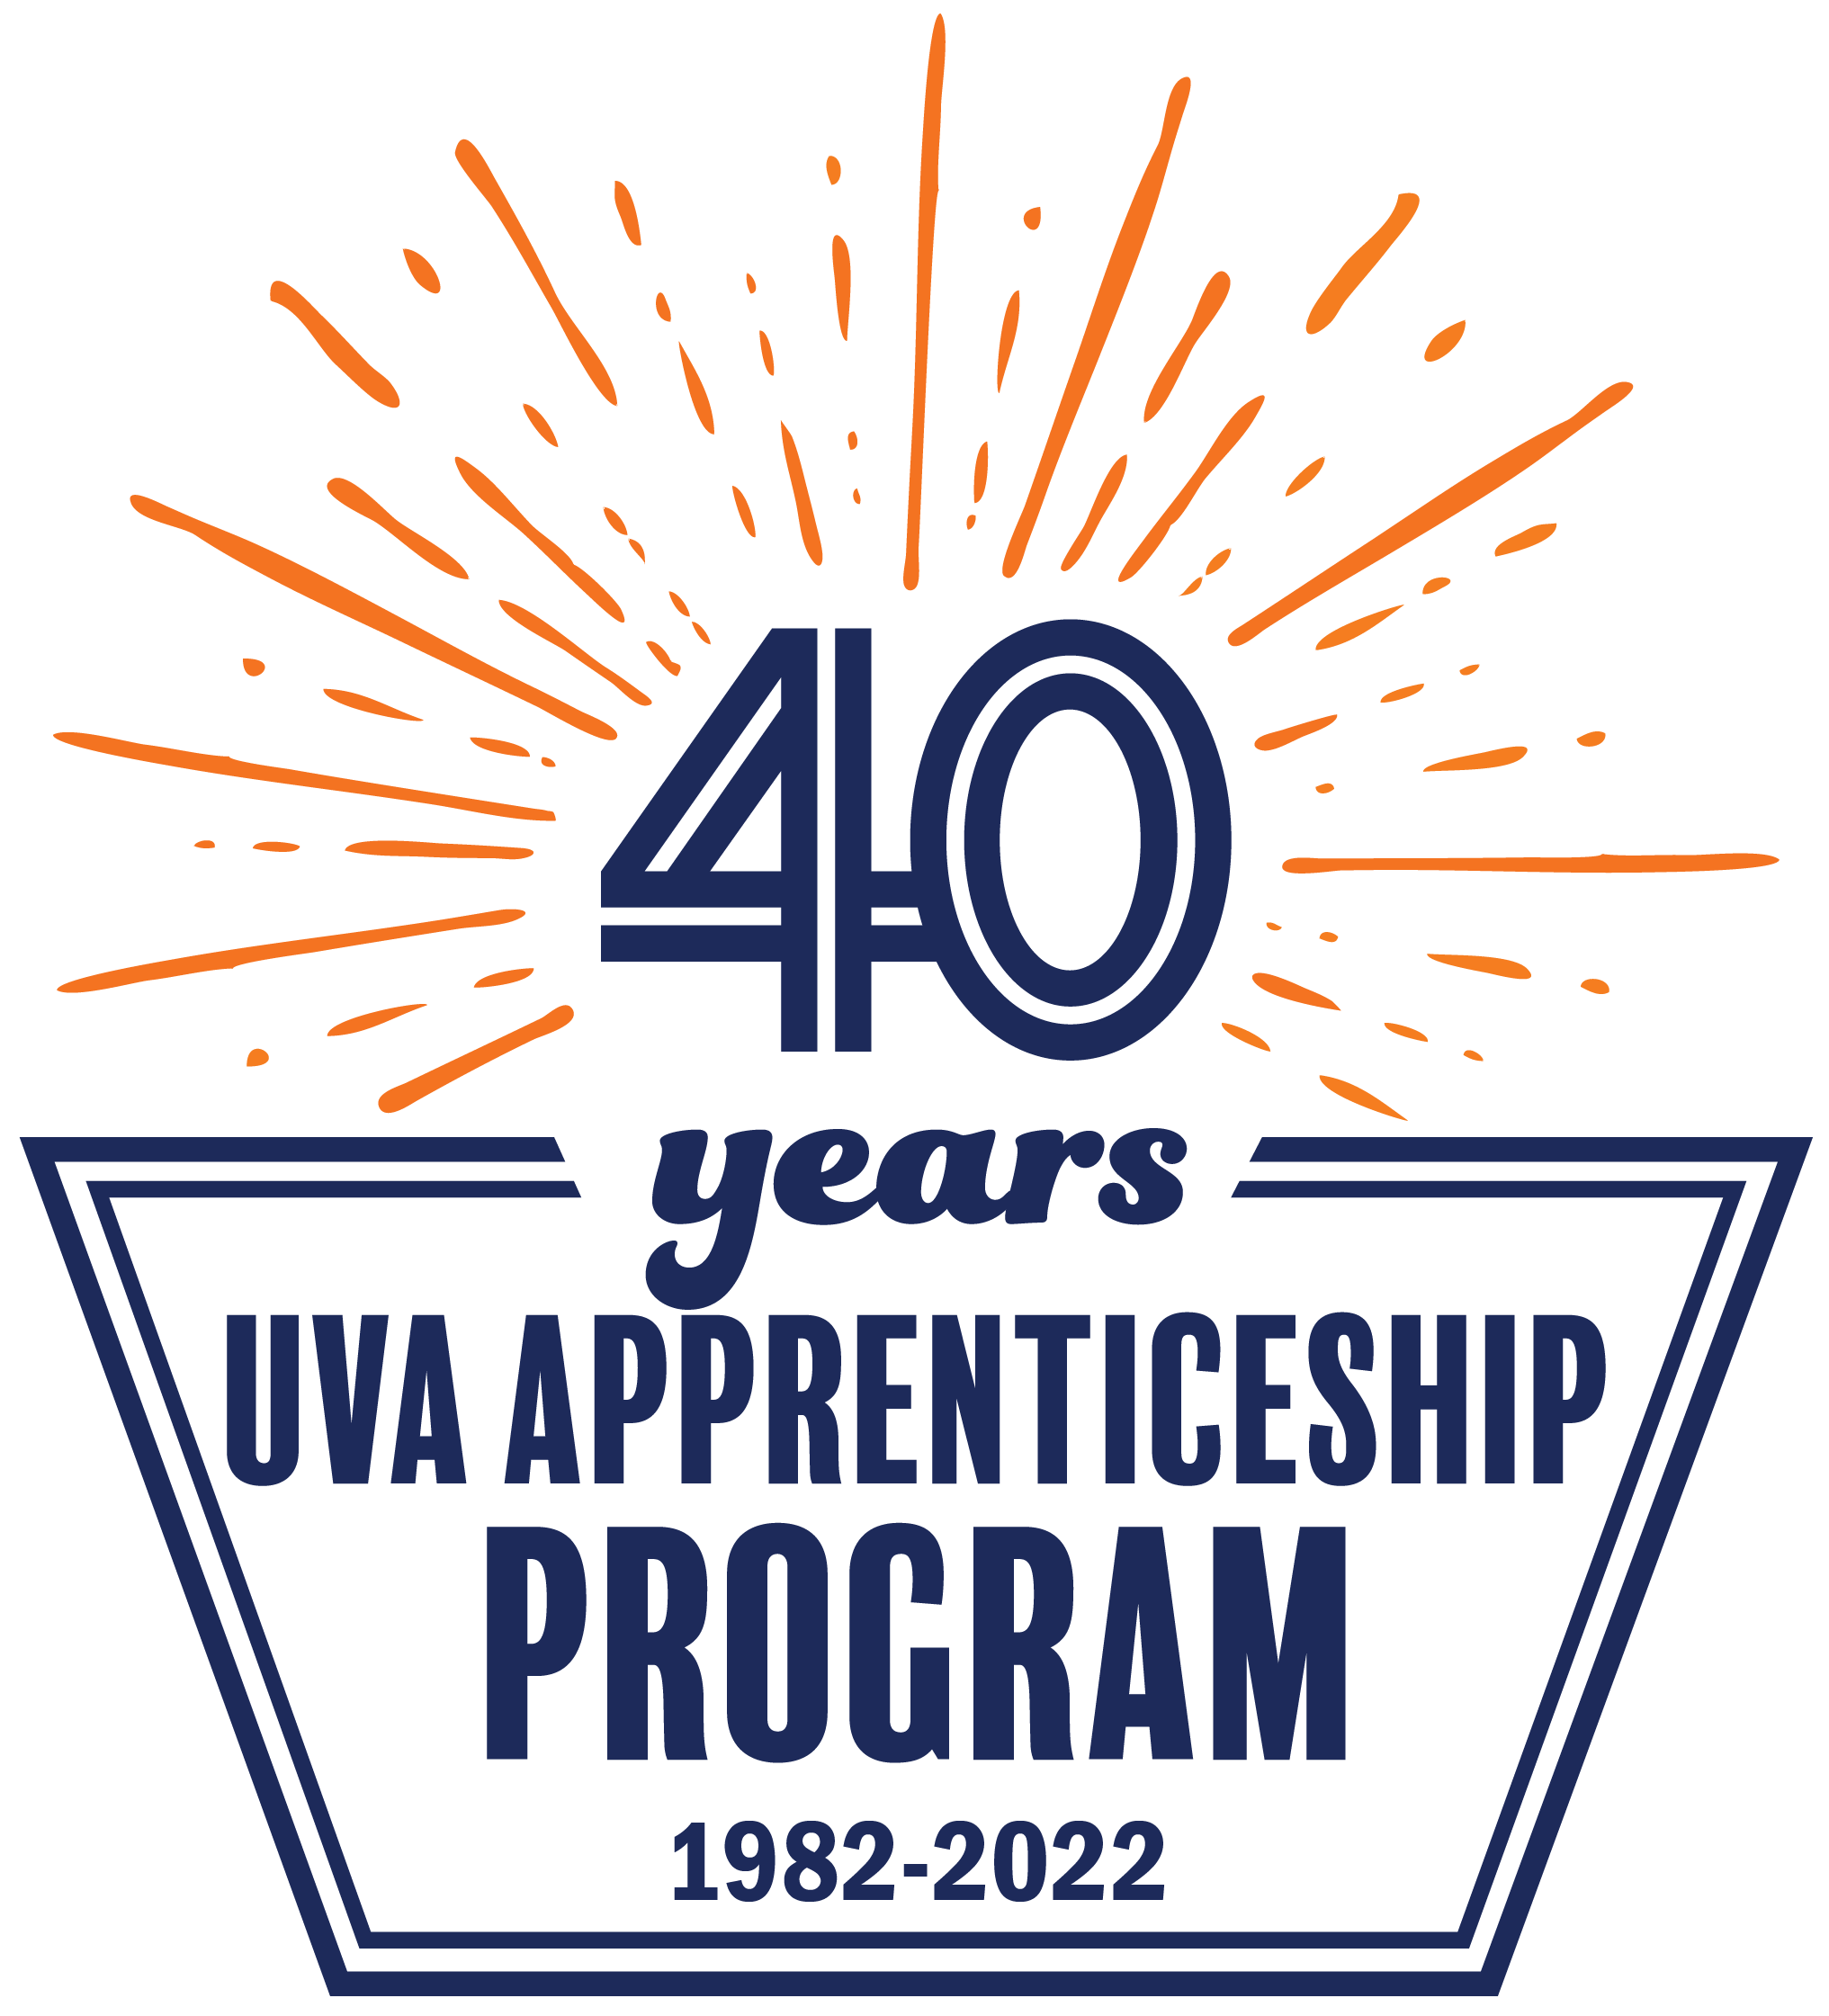 40 years - UVA Apprenticeship Program, 1982-2022